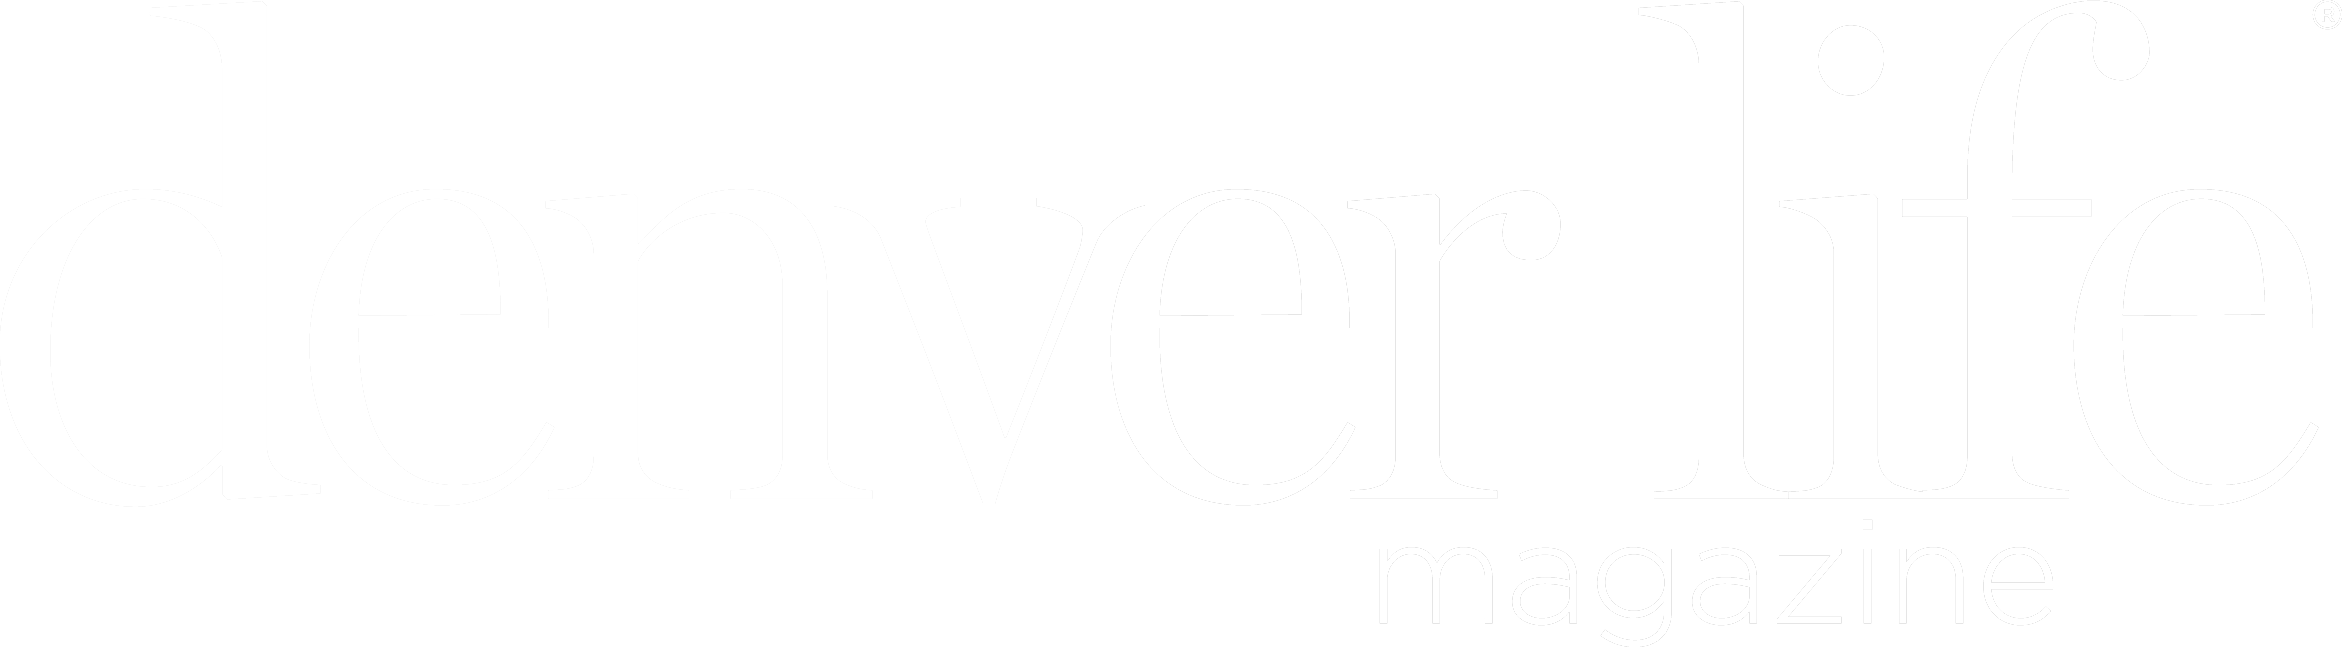 DenverLife-2018-logo-white.png